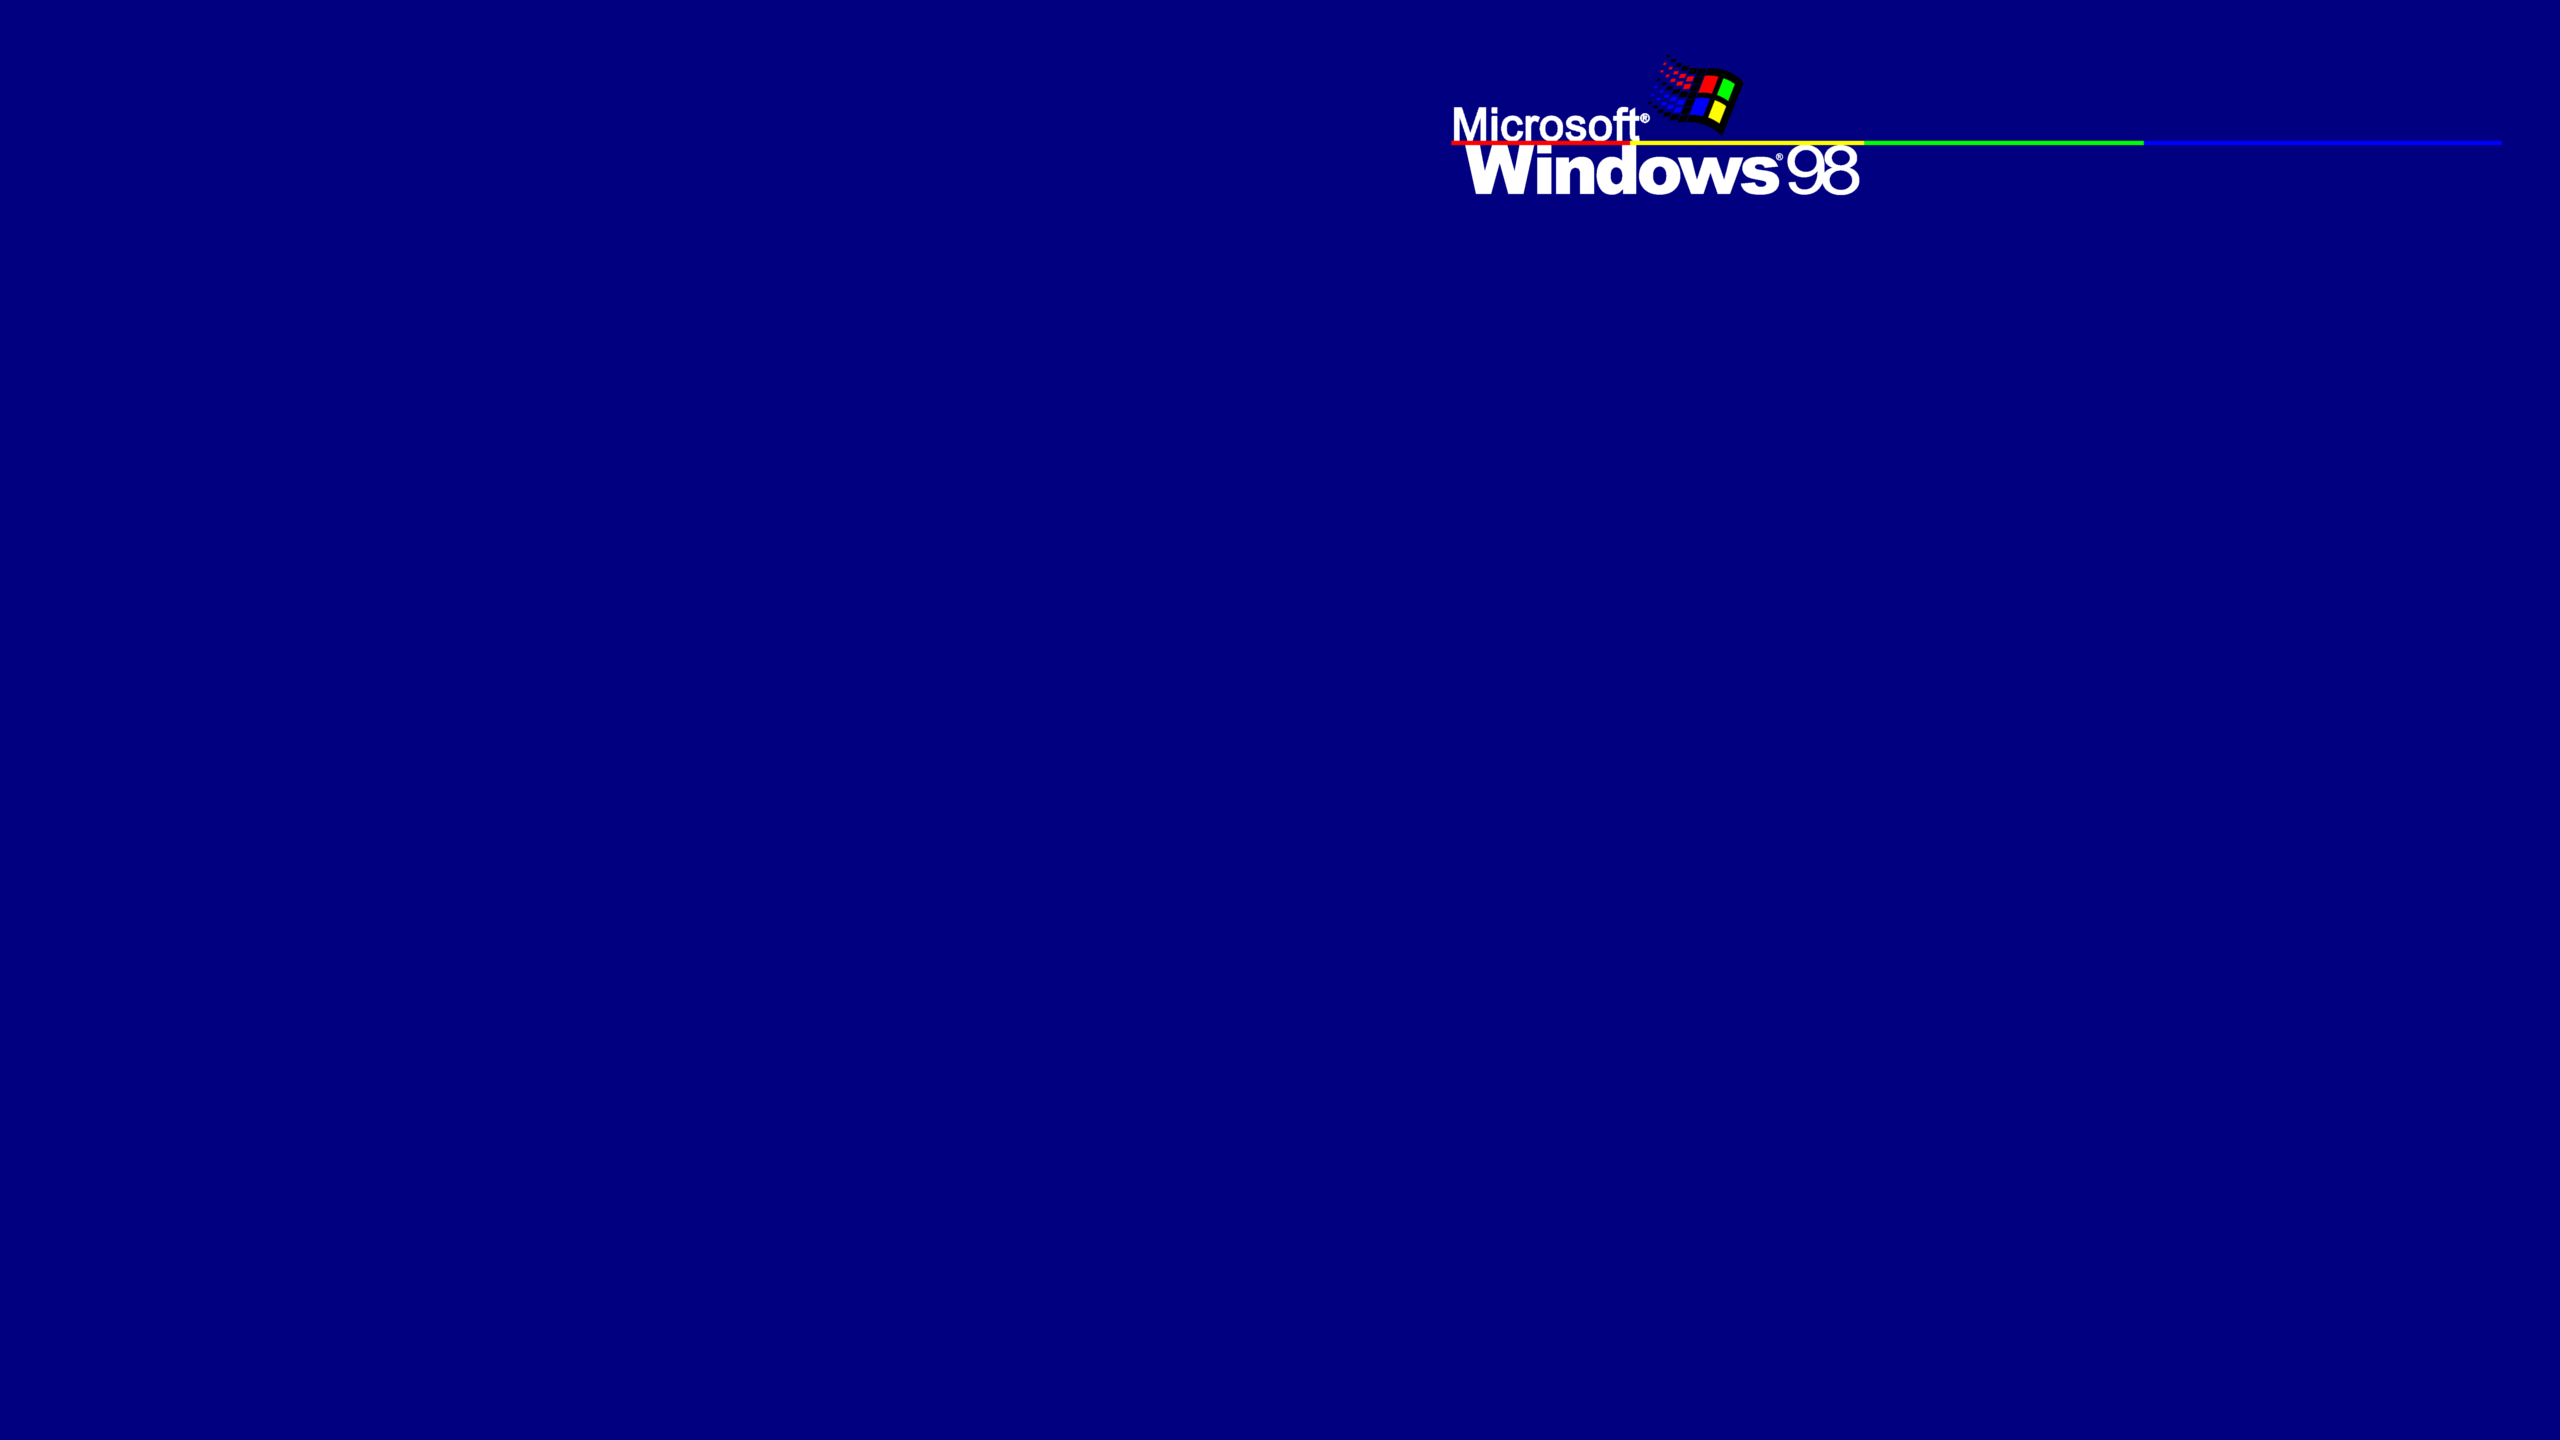 windows 98 online 2018